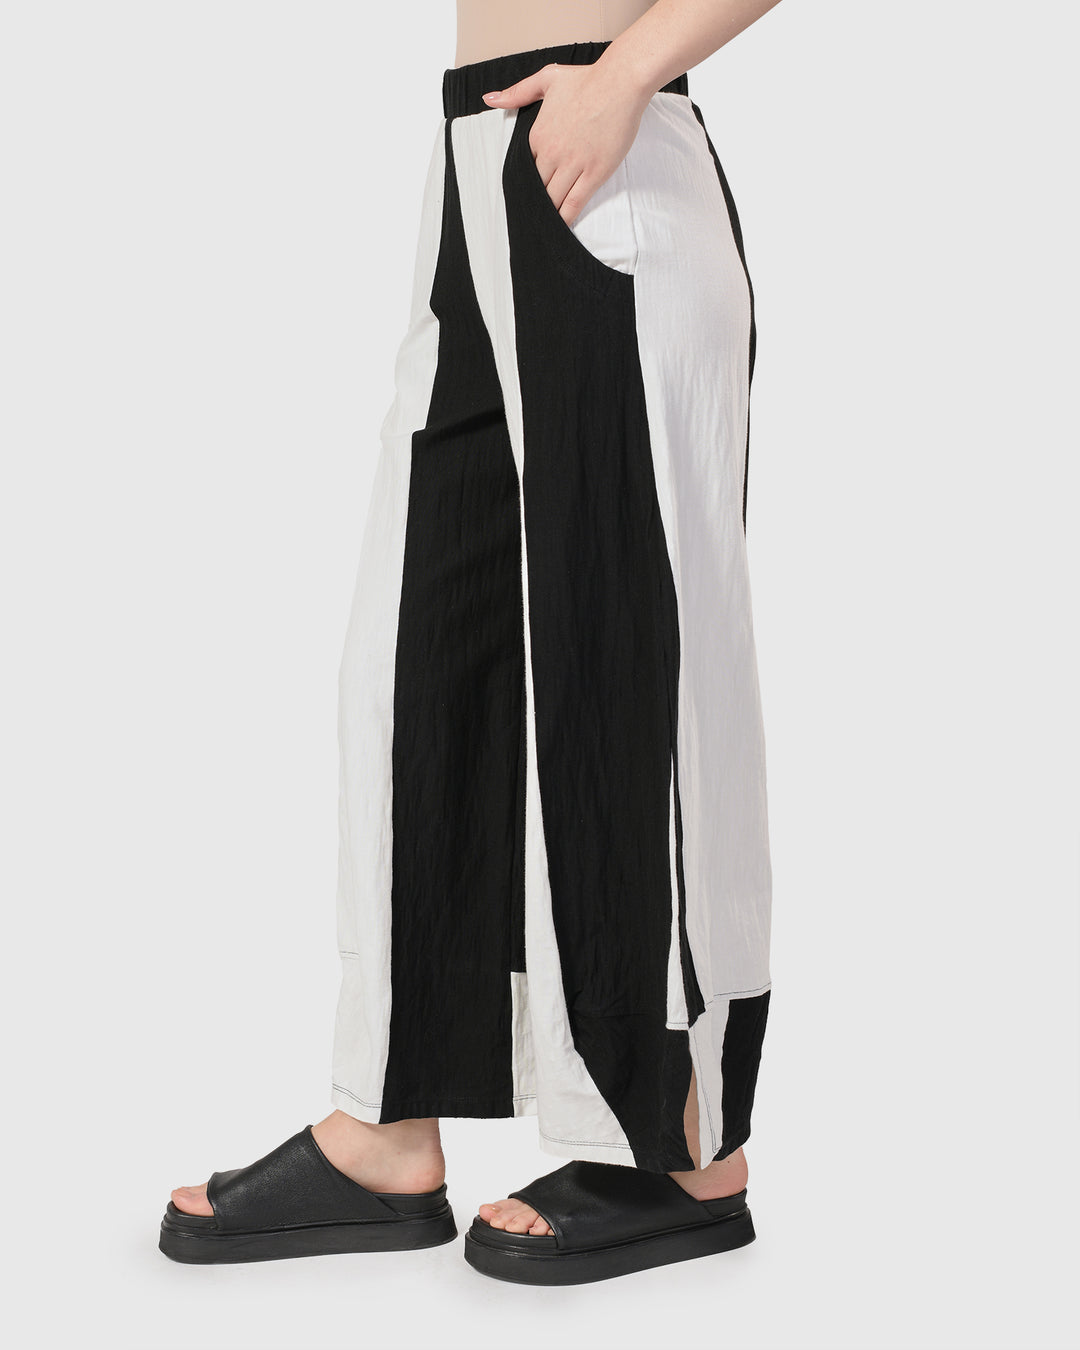 Lina Stripe Lantern Pants, White/black